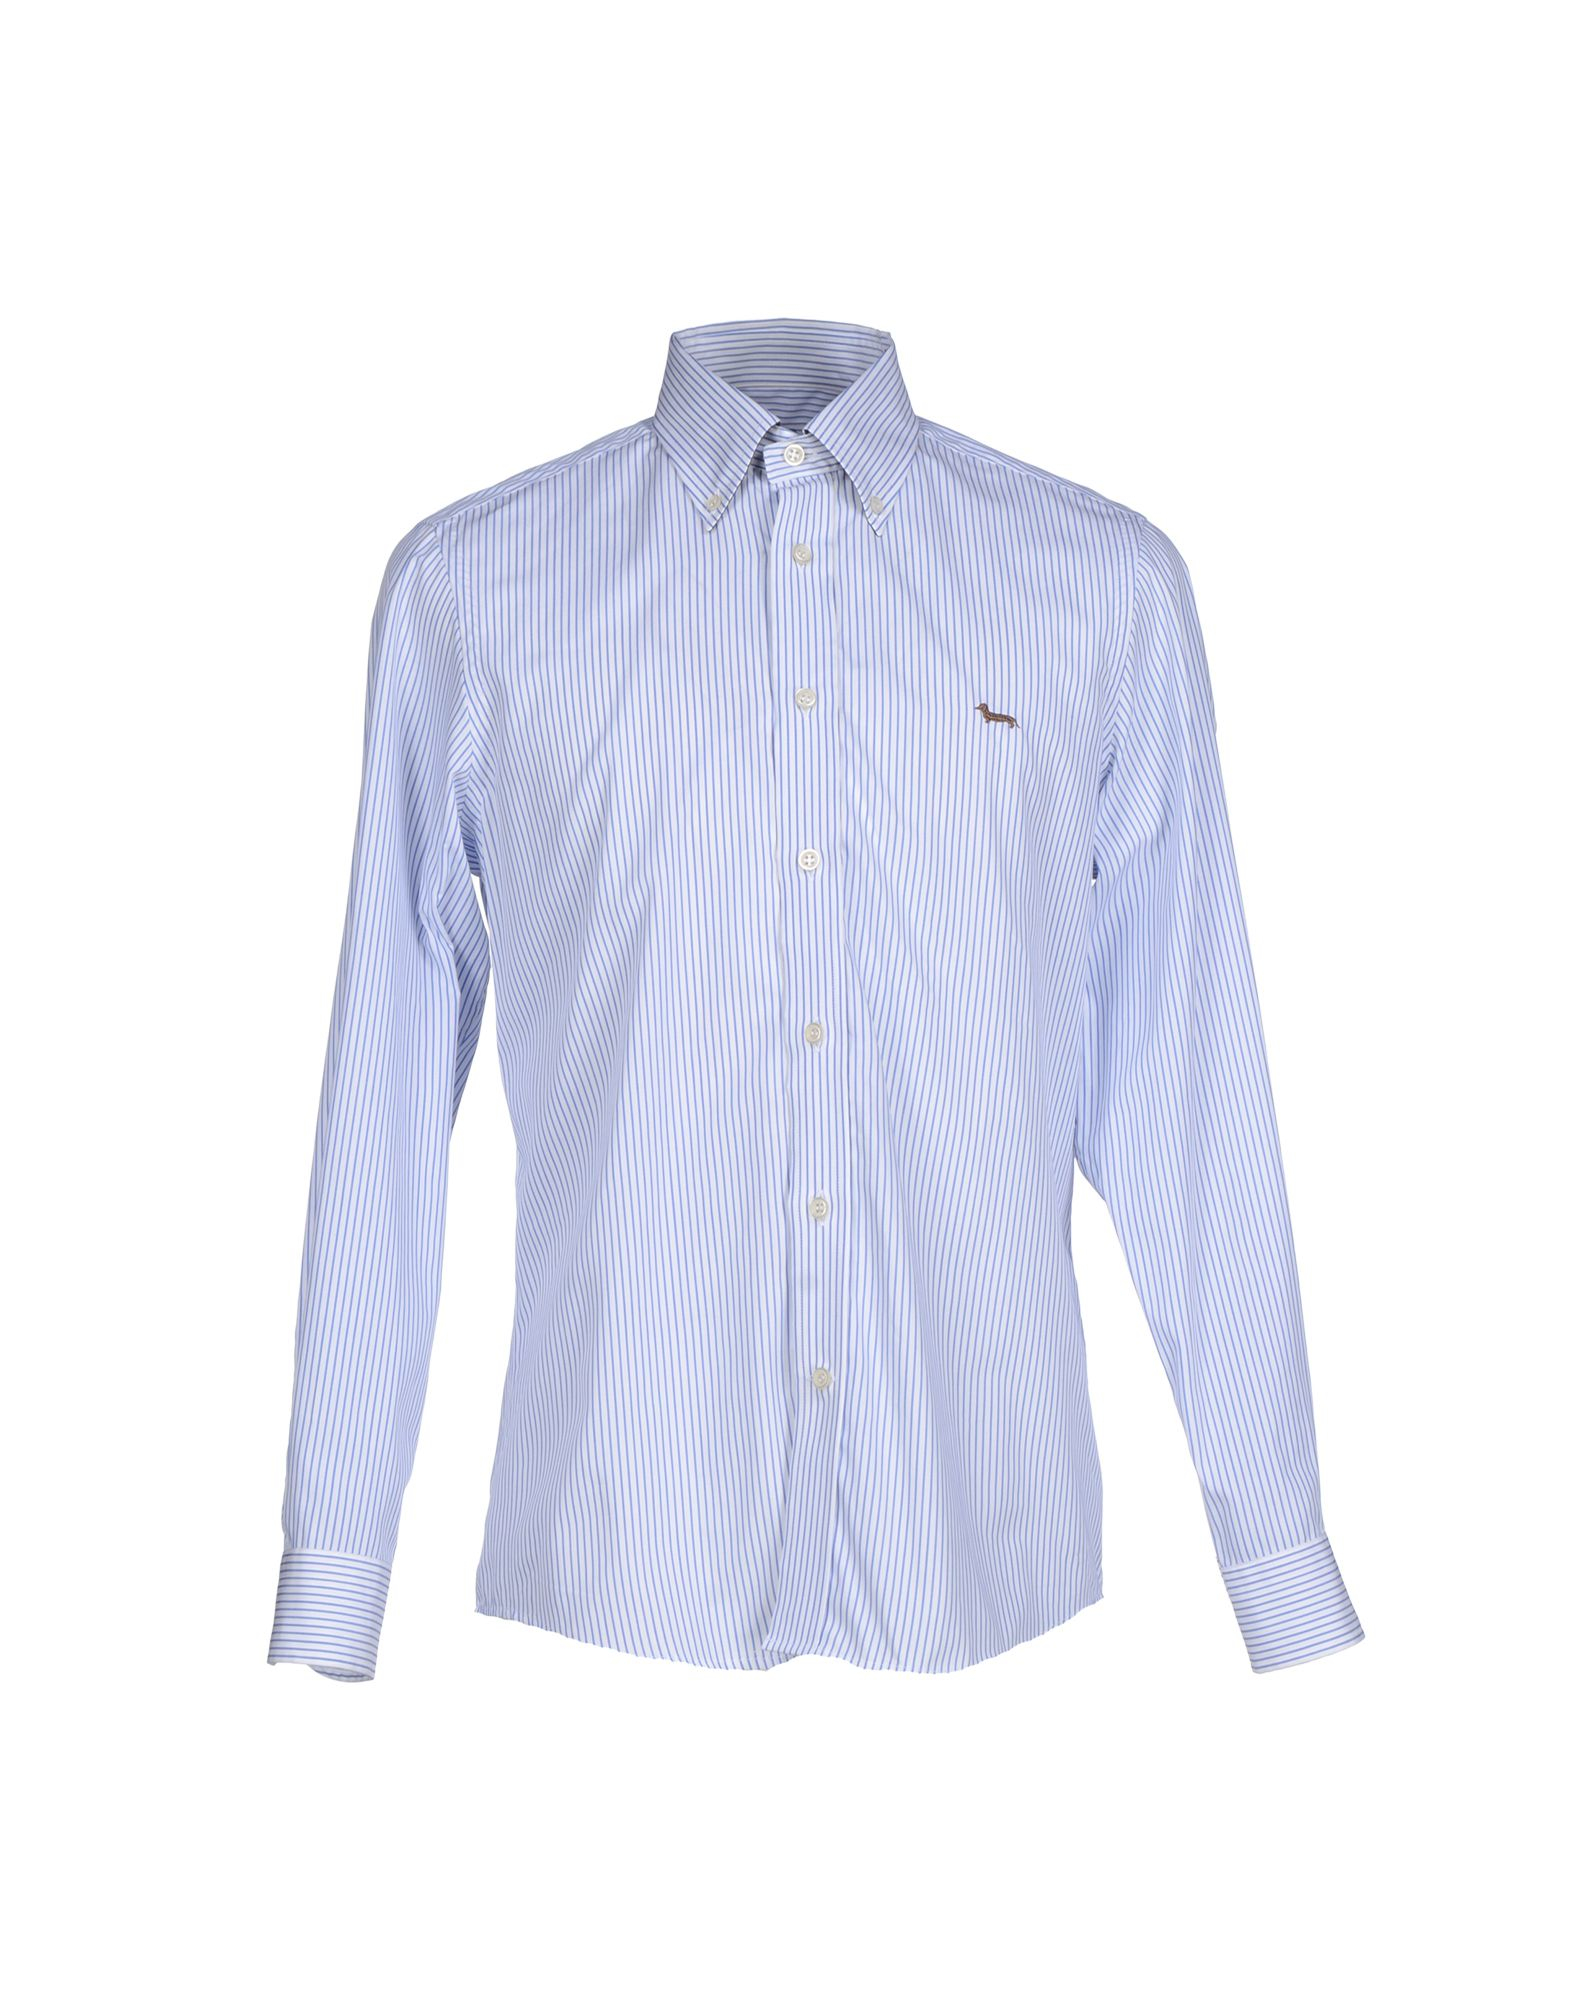 Harmont & blaine Shirt in Blue for Men (Azure) | Lyst